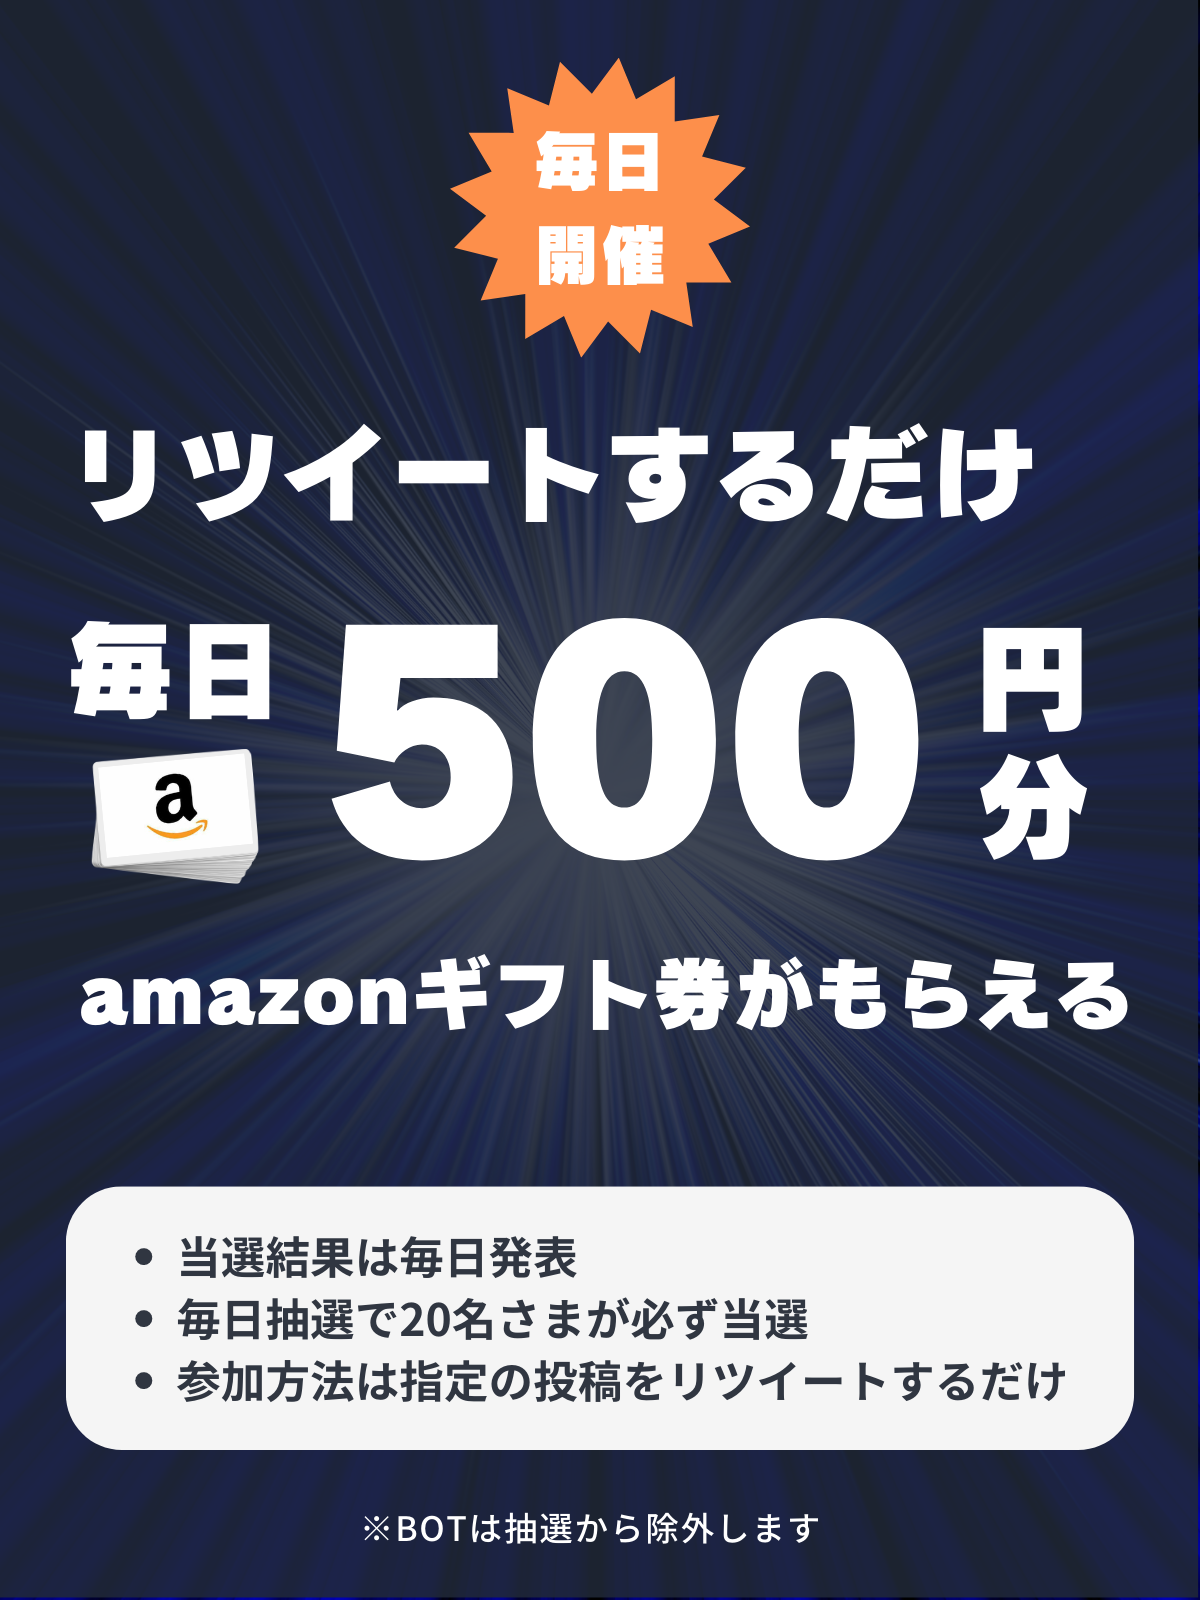 FANCLUB(海外FXふぁんくらぶ)リツイート500円キャンペーン